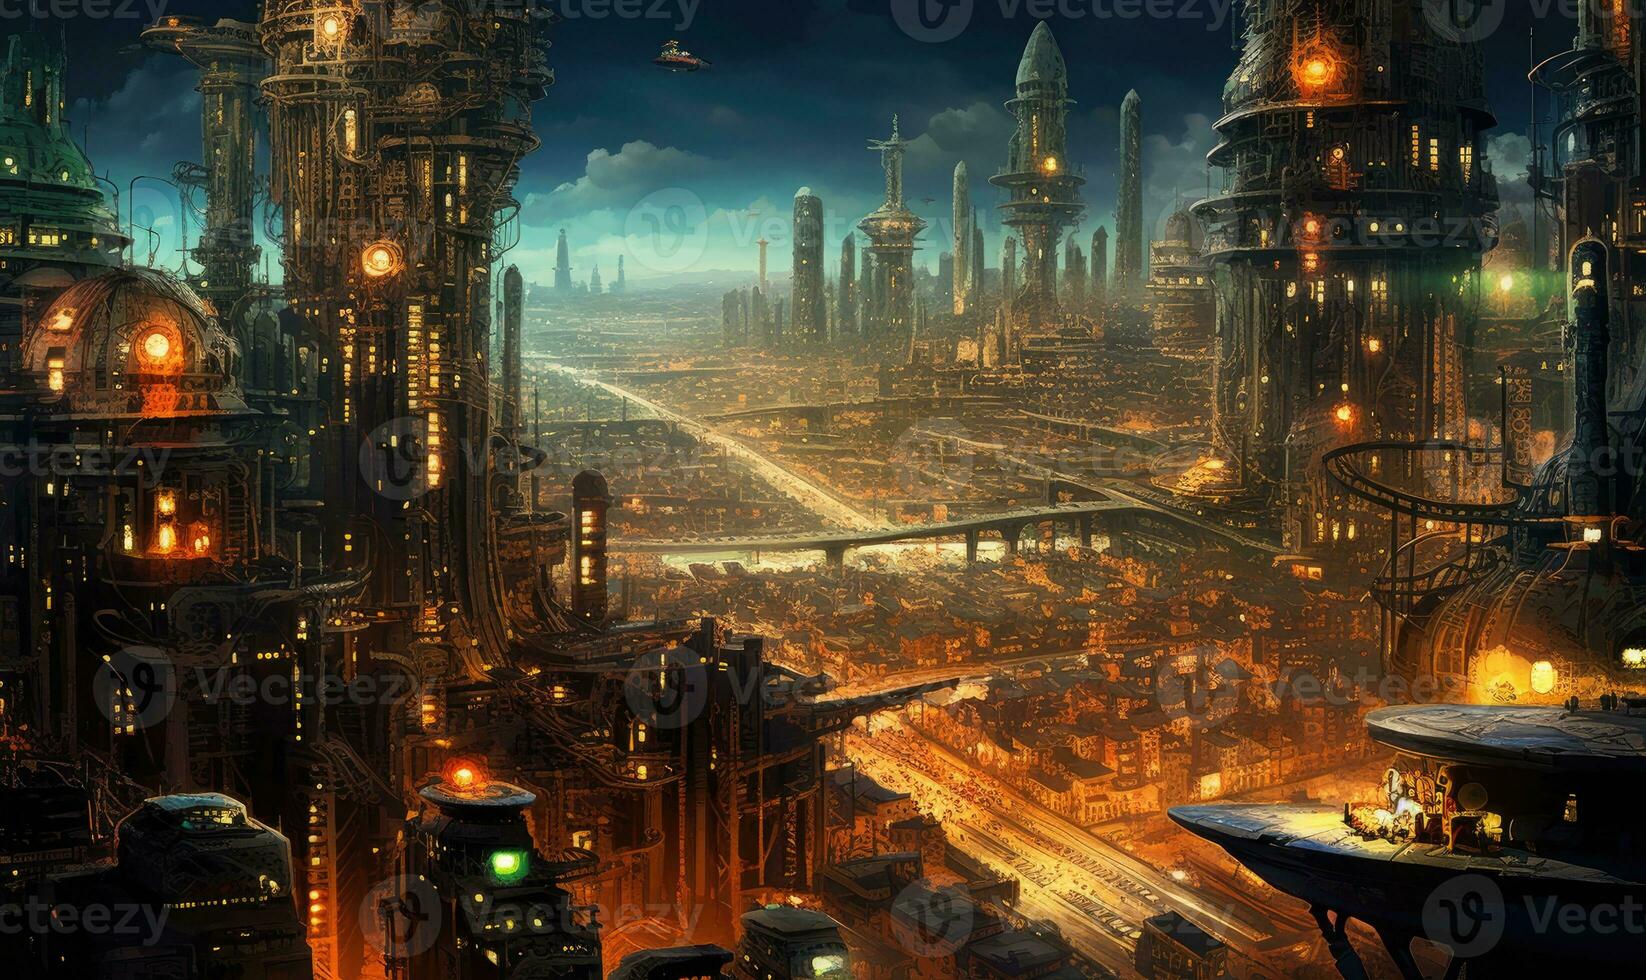 nuit ville futuriste rue paysage ville mystique affiche extraterrestre steampunk fond d'écran fantastique photo